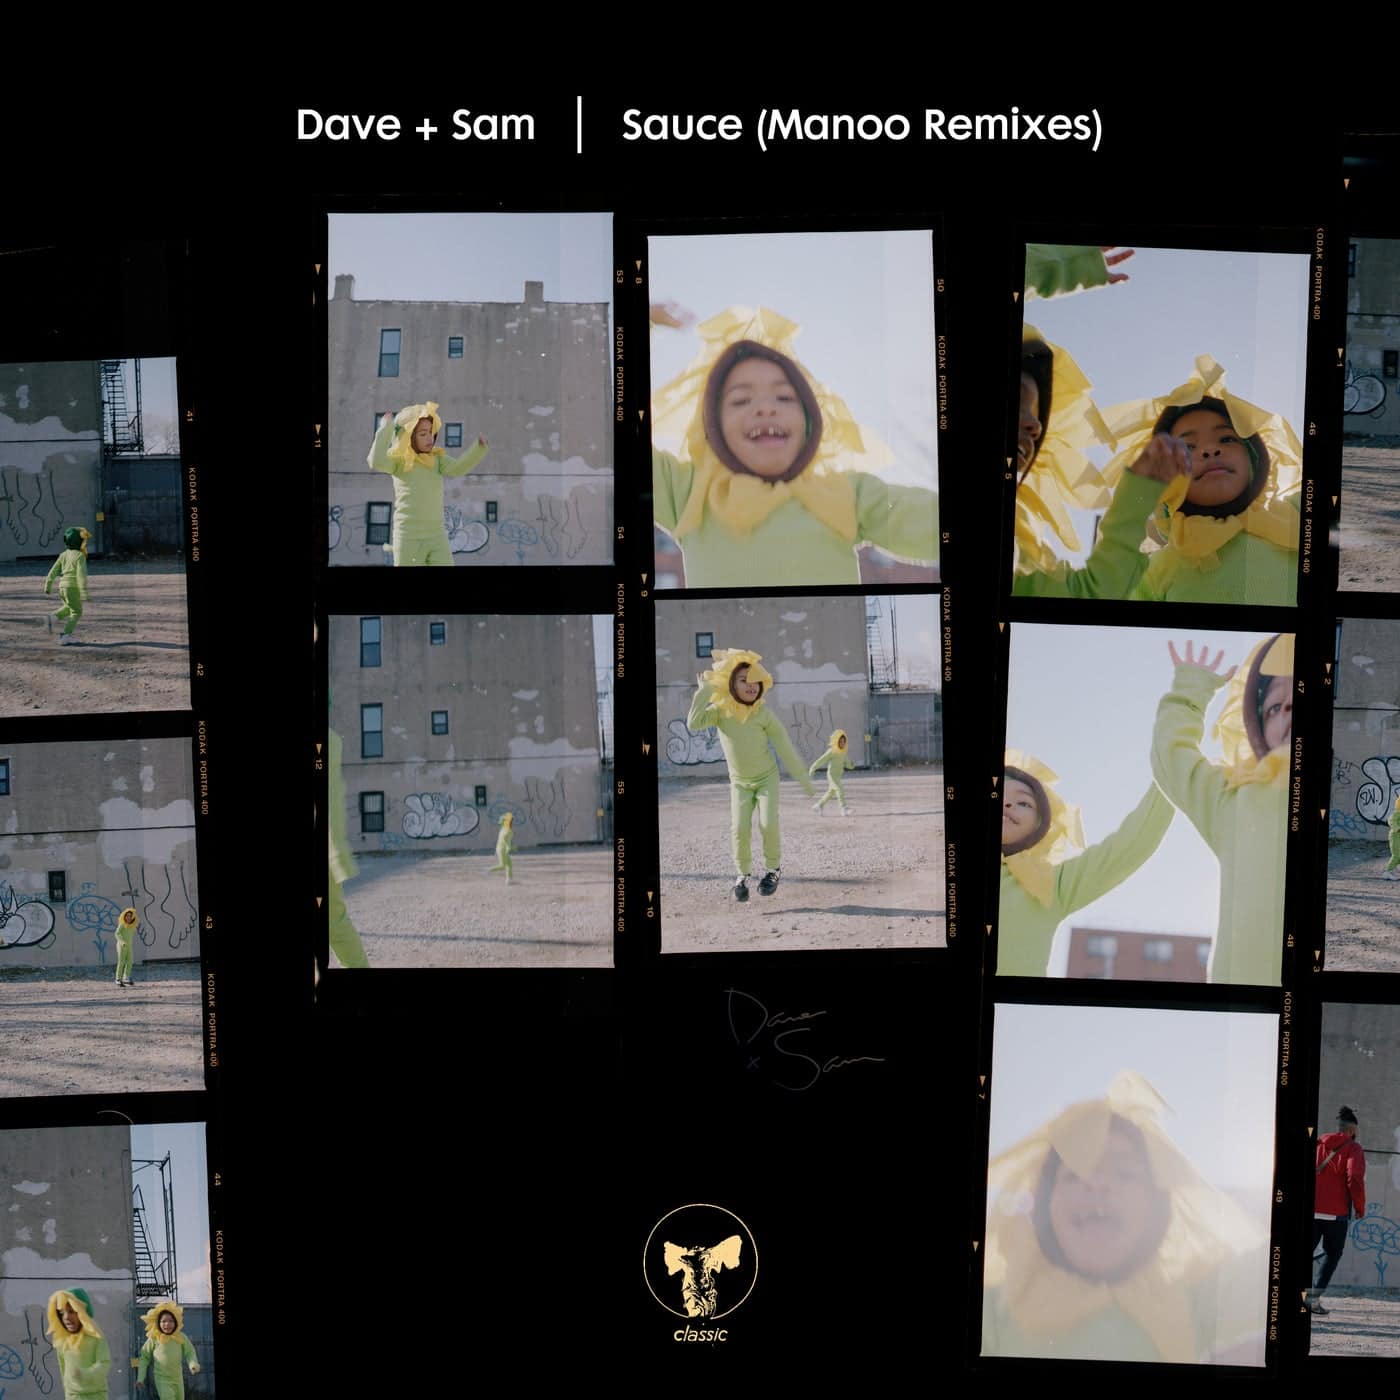 image cover: Dave + Sam - Sauce - Manoo Remixes / CMC217D2